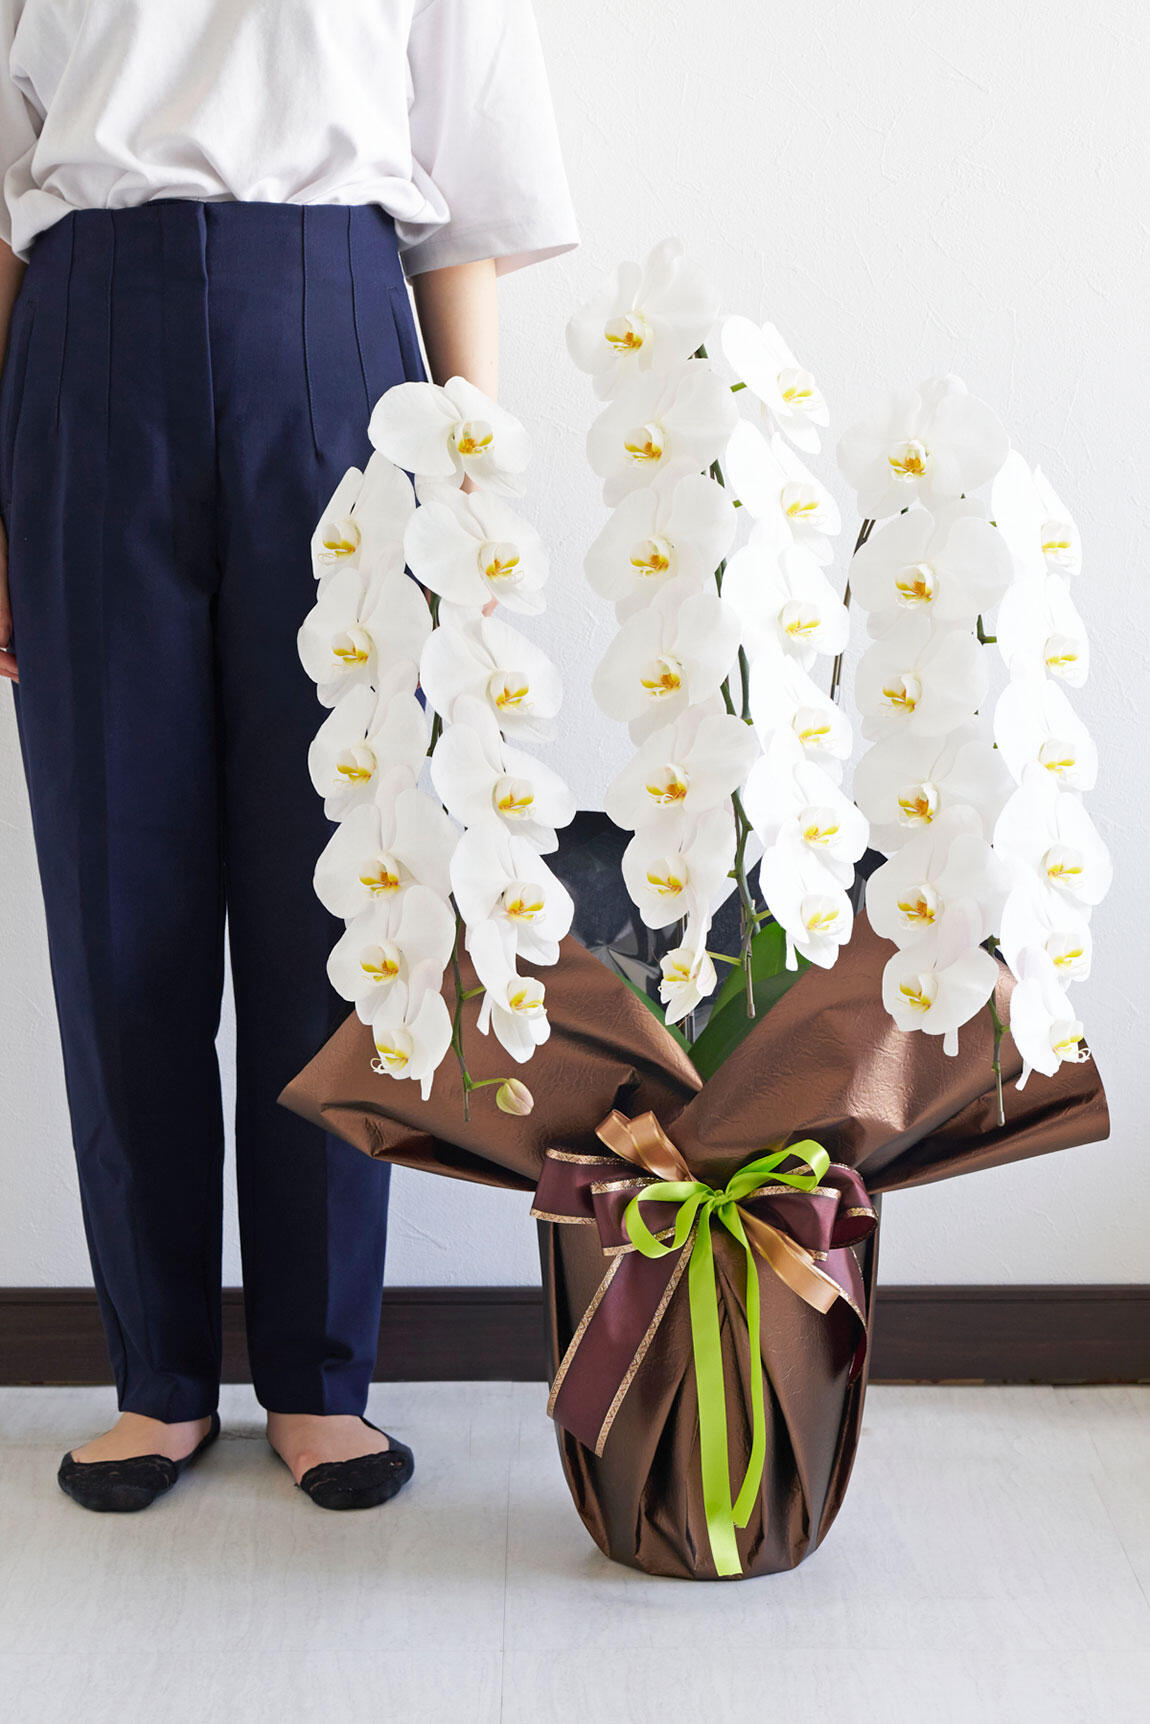 <p>胡蝶蘭と人が並んだ際のサイズのイメージです。（生花のためサイズは前後する場合がございます。）</p>